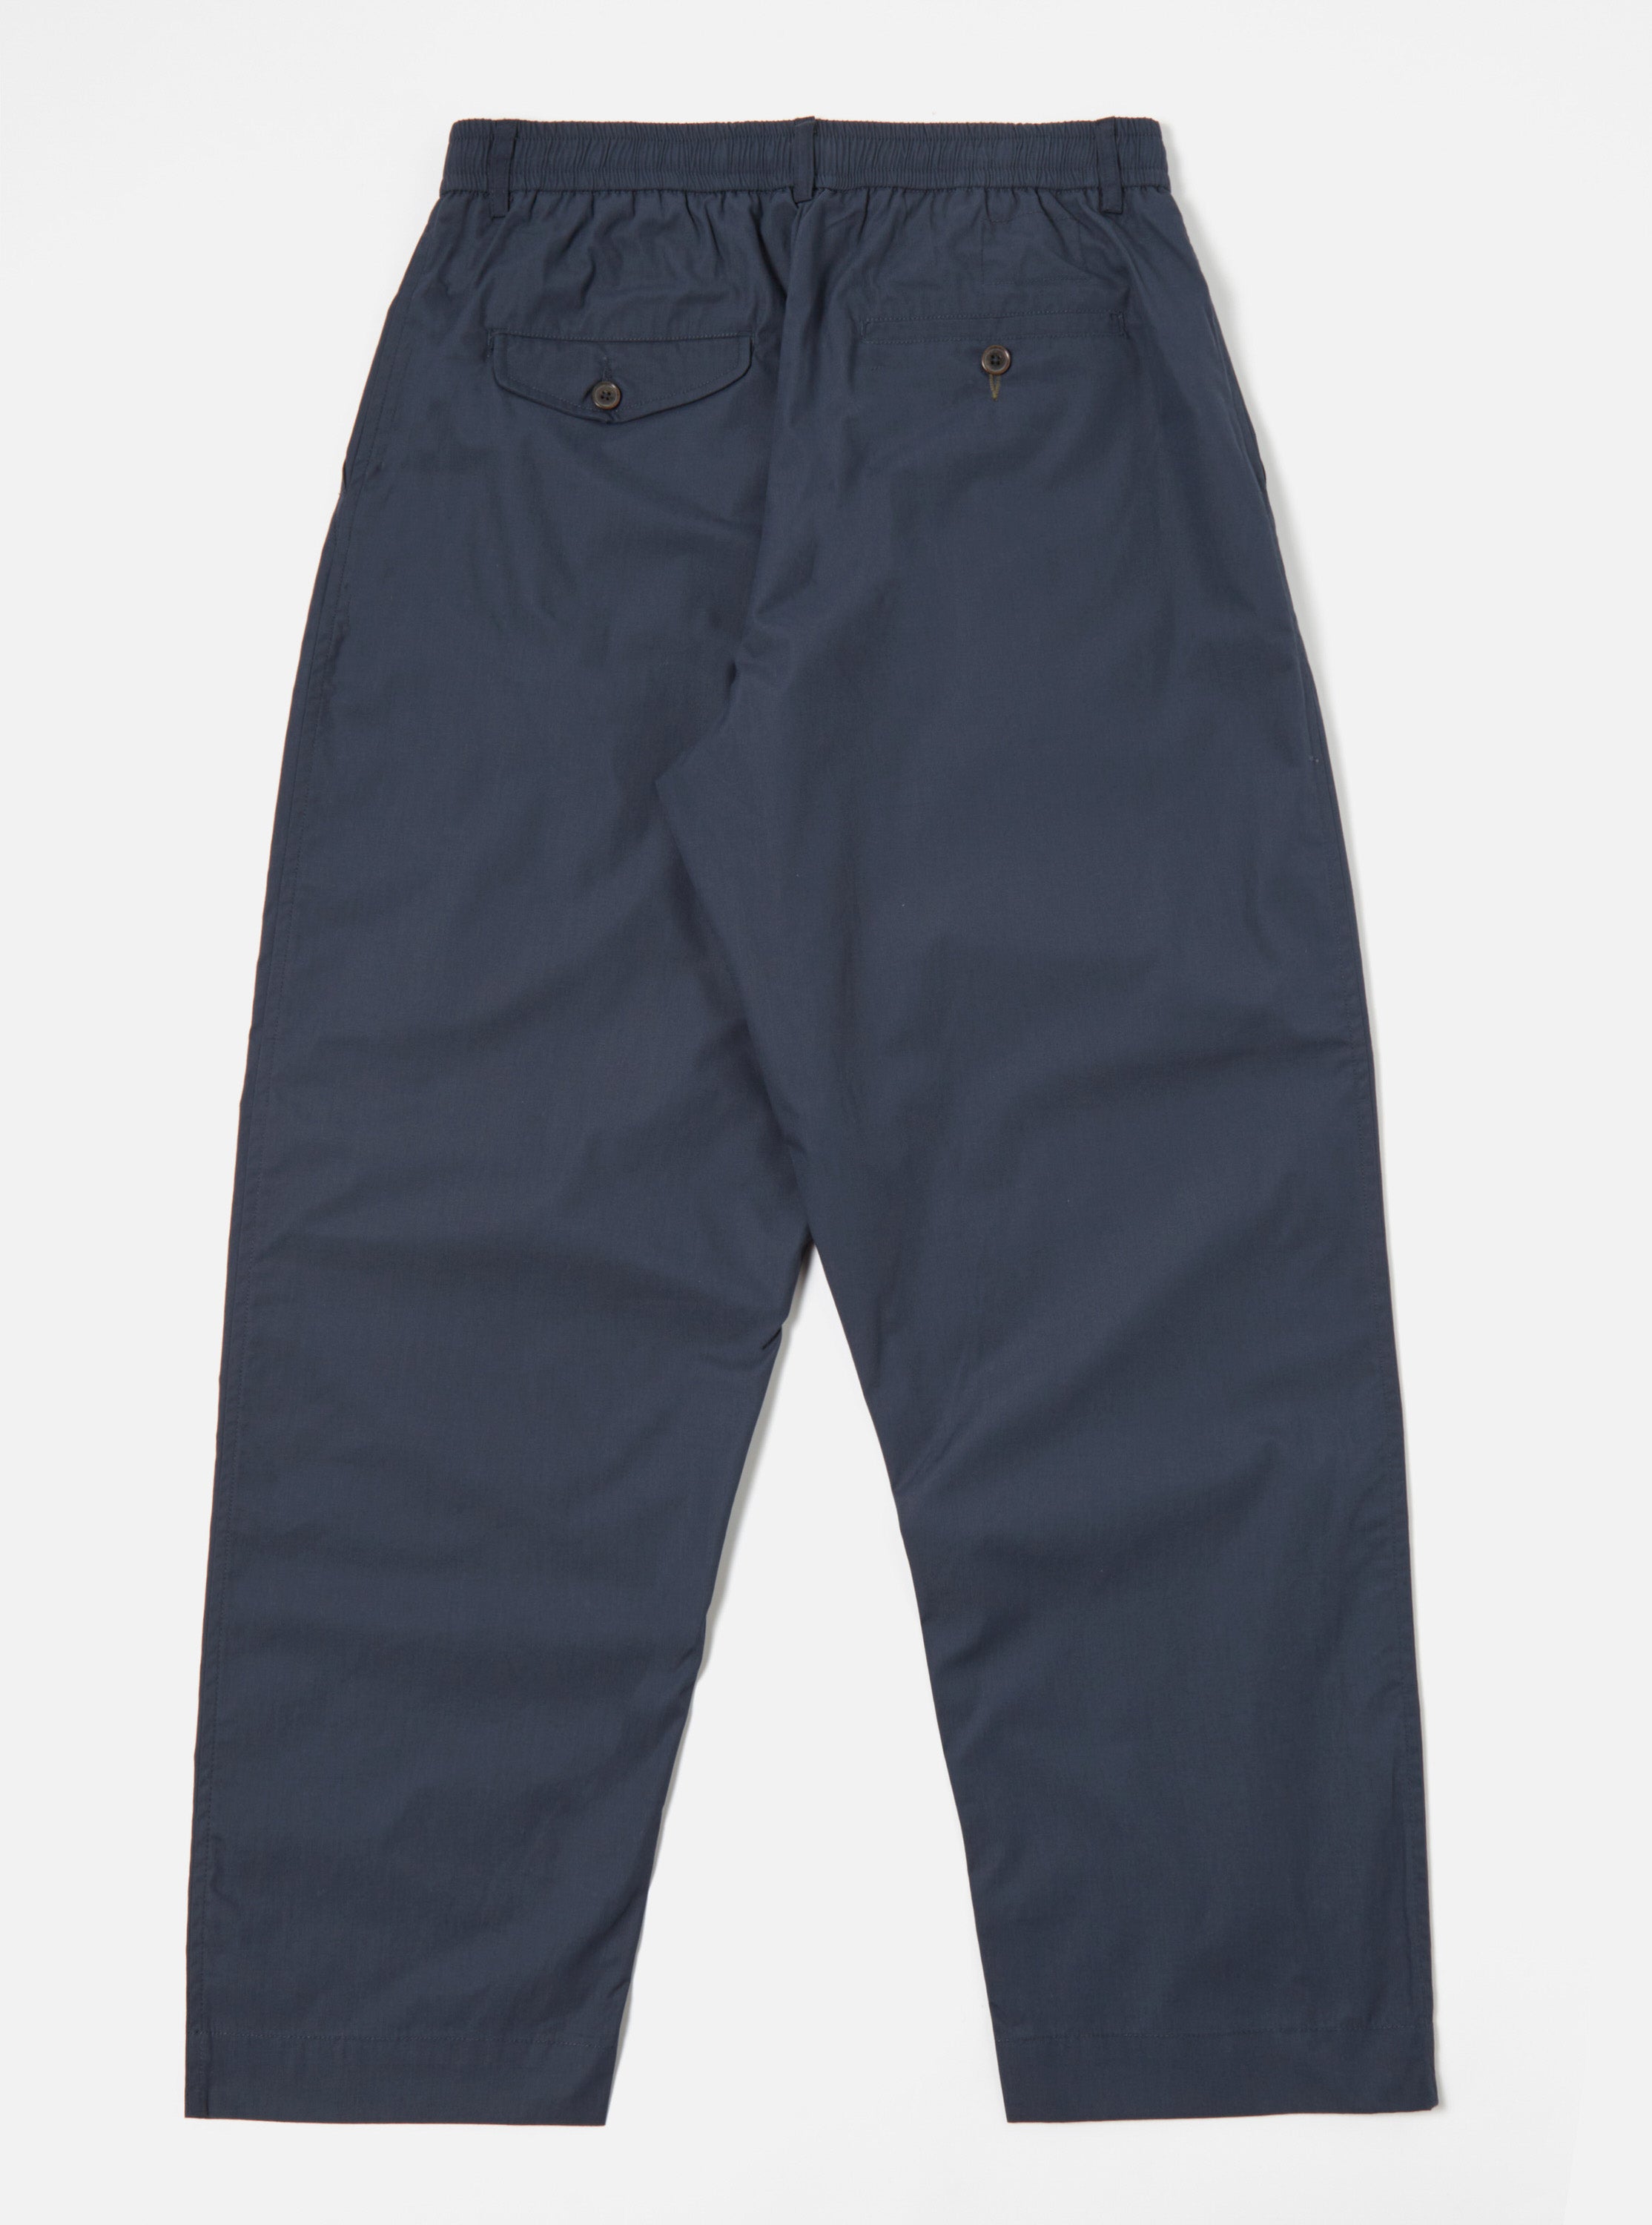 COPY - Classic Charcoal Gray Oxford Cotton Suit Pant NWT! Express trousers  W42 … | Cotton suit, Suit pant, Pants